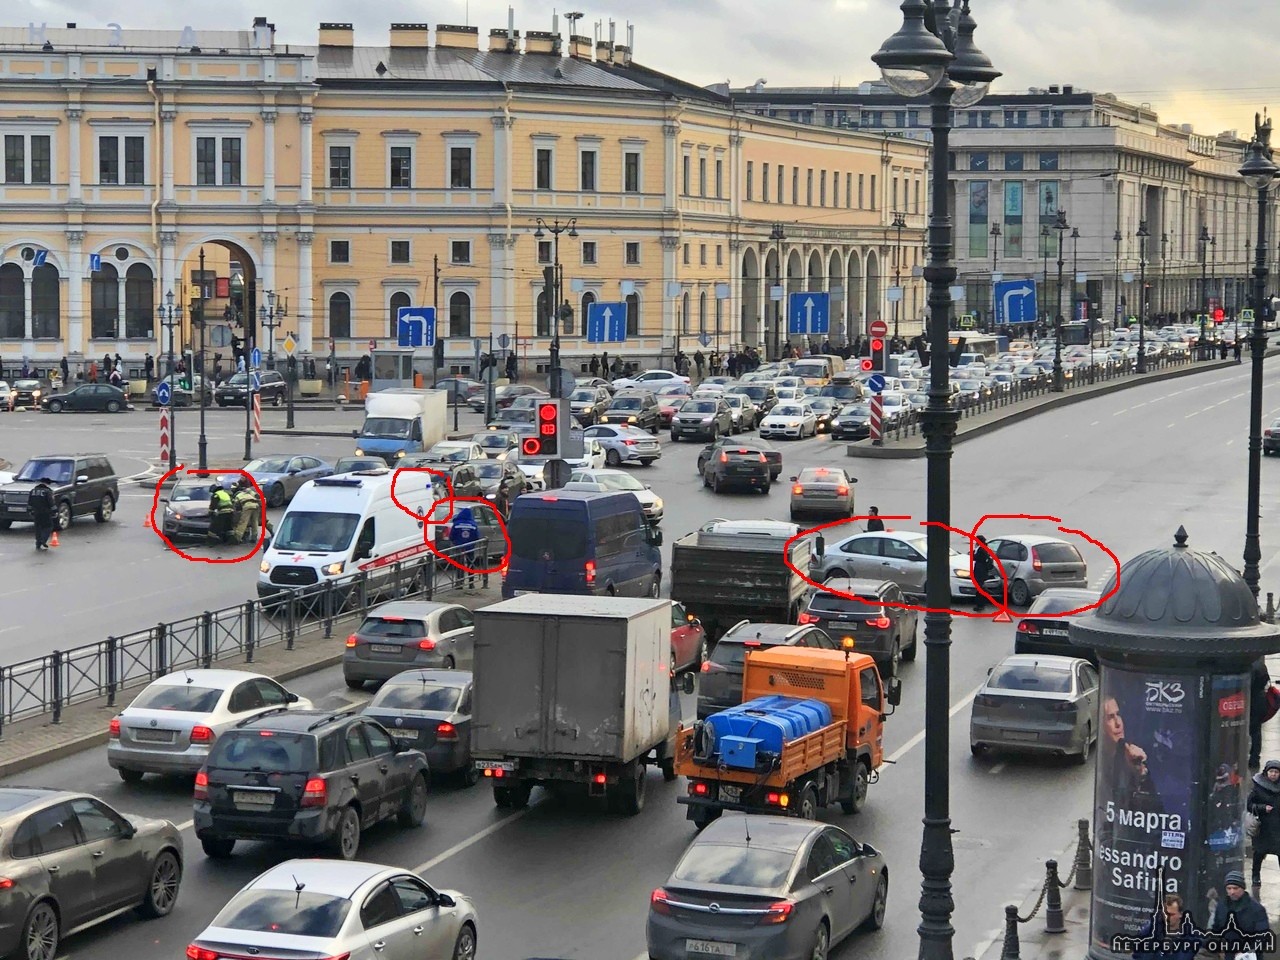 Яндекс такси Volkswagen Поло выехал на площадь Восстания на запрещающий сигнал светофора и совершил...